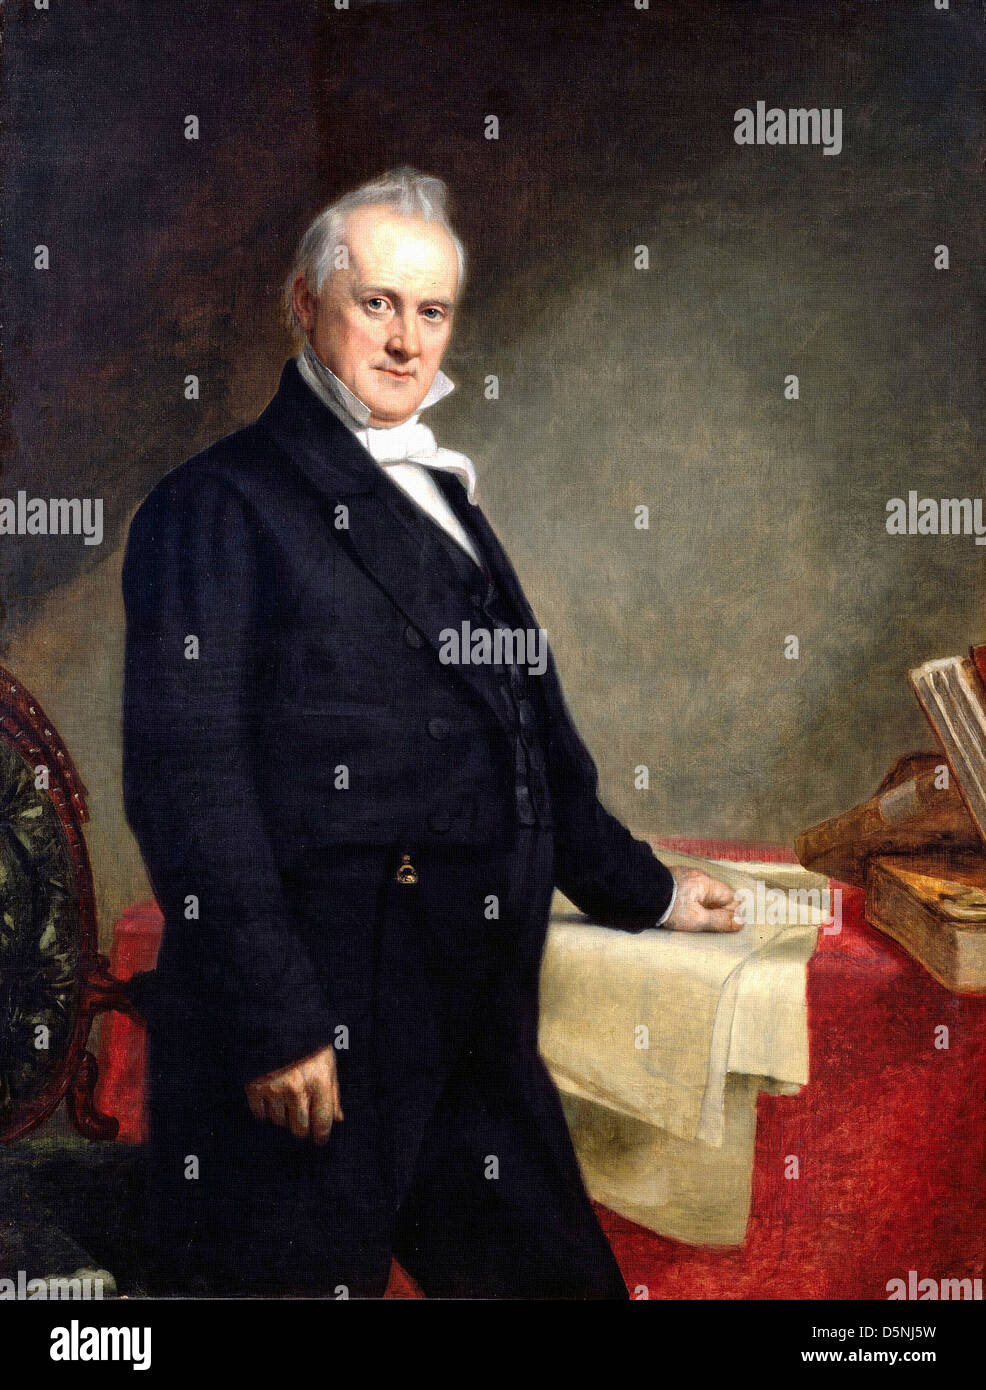 George Healy, Porträt von James Buchanan 1859 Öl auf Leinwand. Smithonian National Portrait Gallery Stockfoto